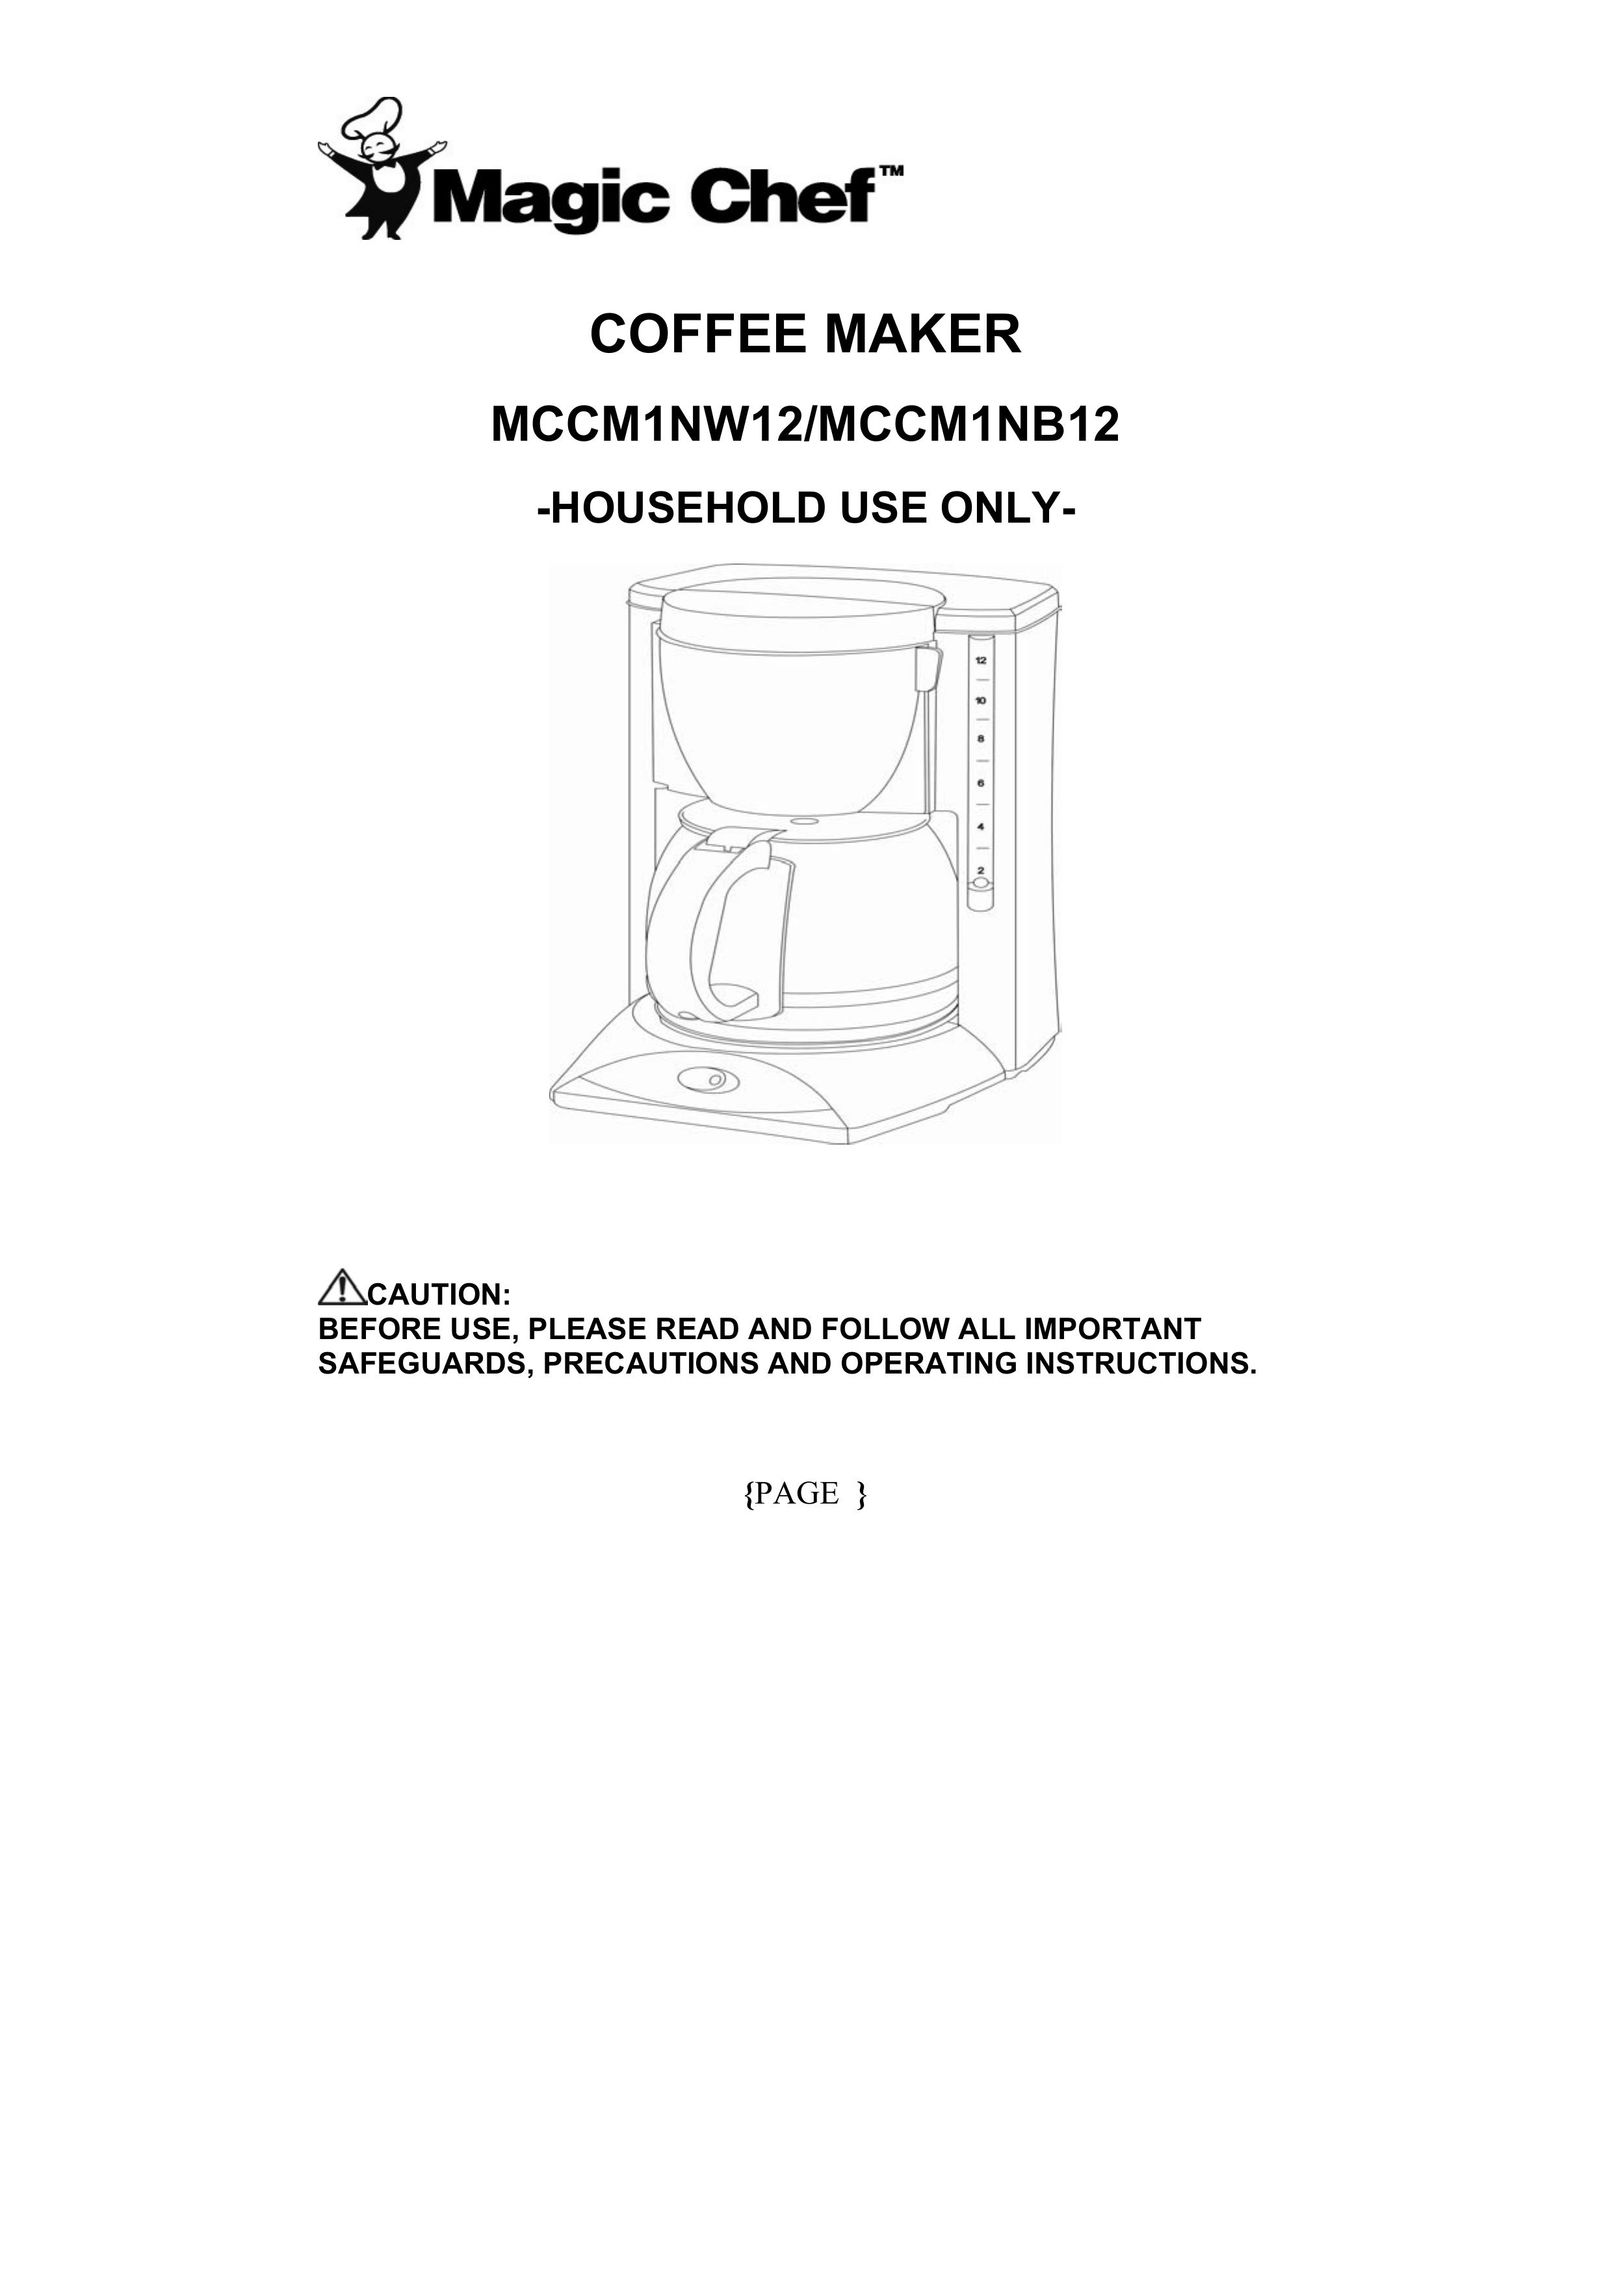 Maytag MCCM1NW12 Coffeemaker User Manual